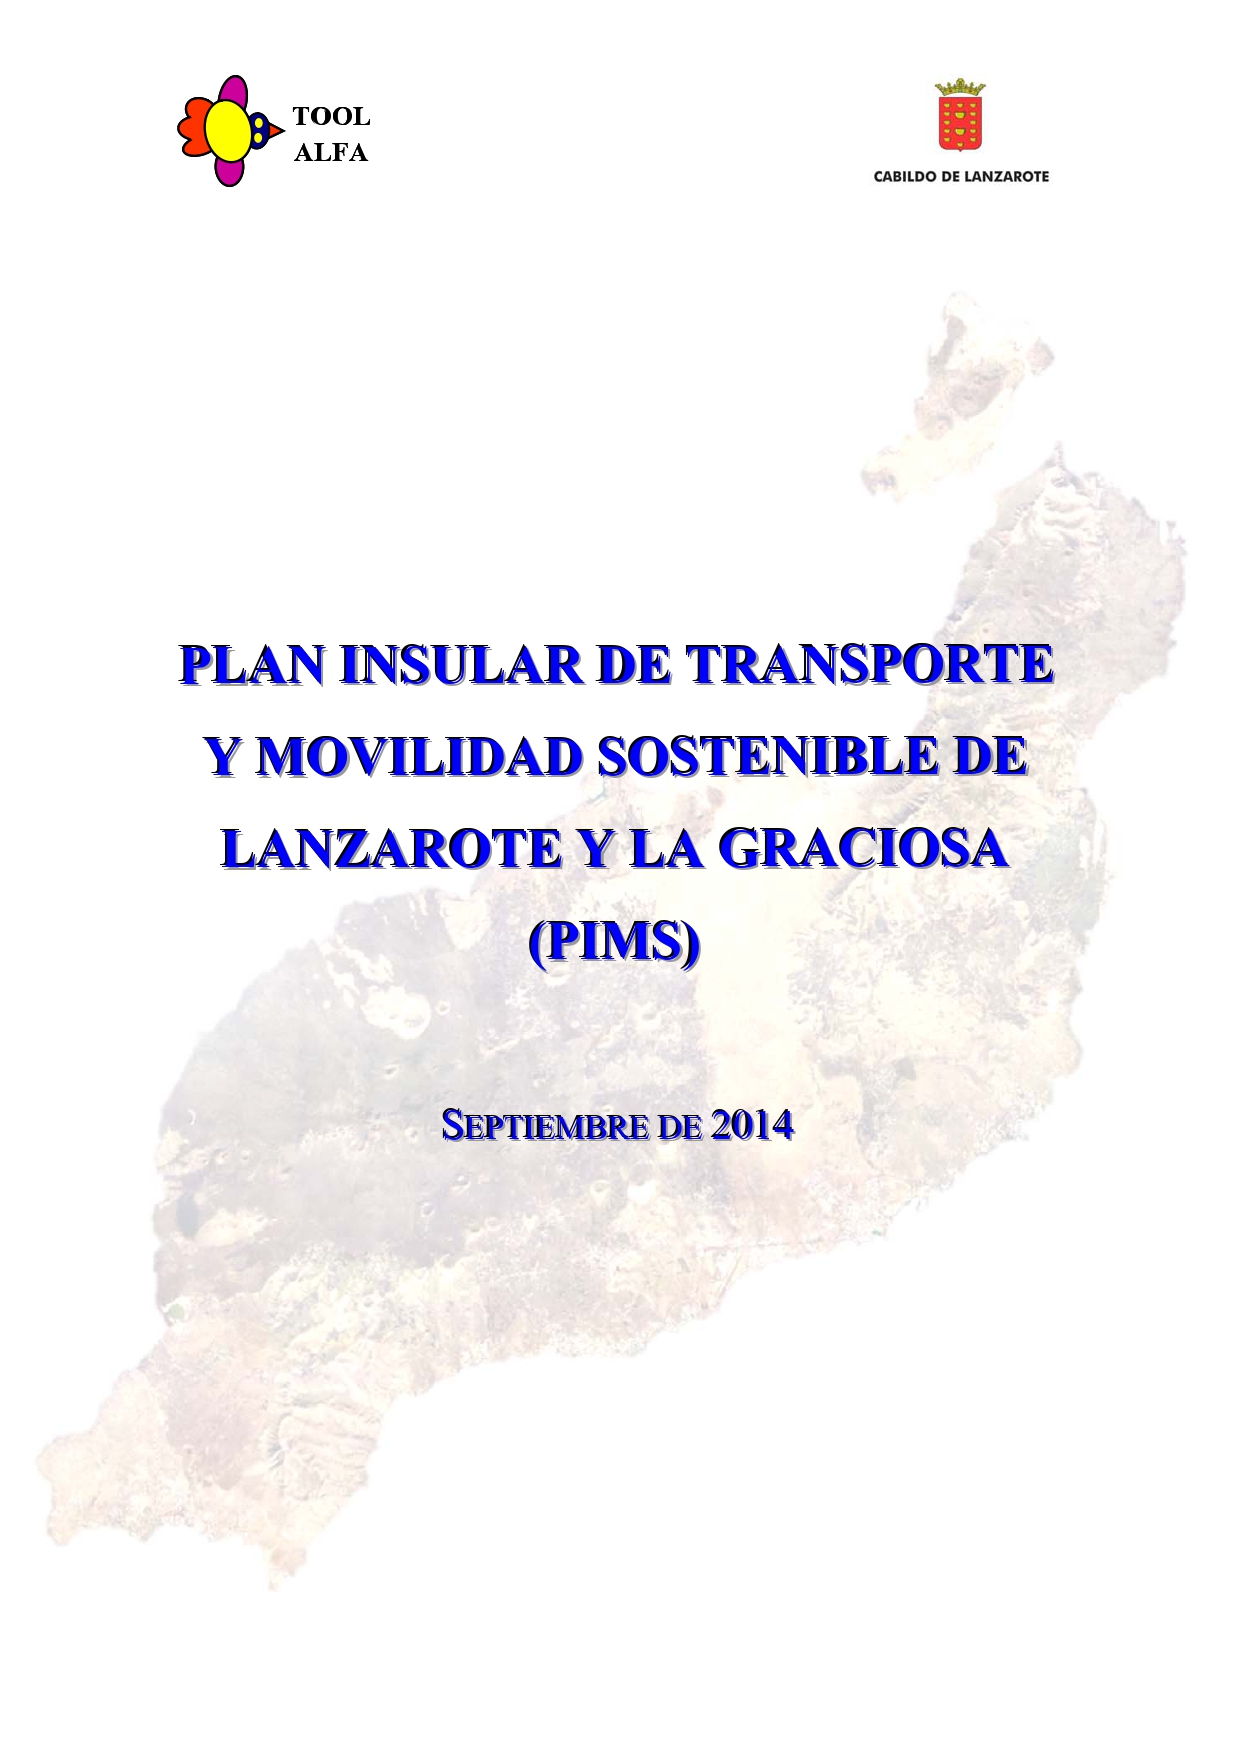 Plan de Transporte y Movilidad Sostenible de Lanzarote y La Graciosa